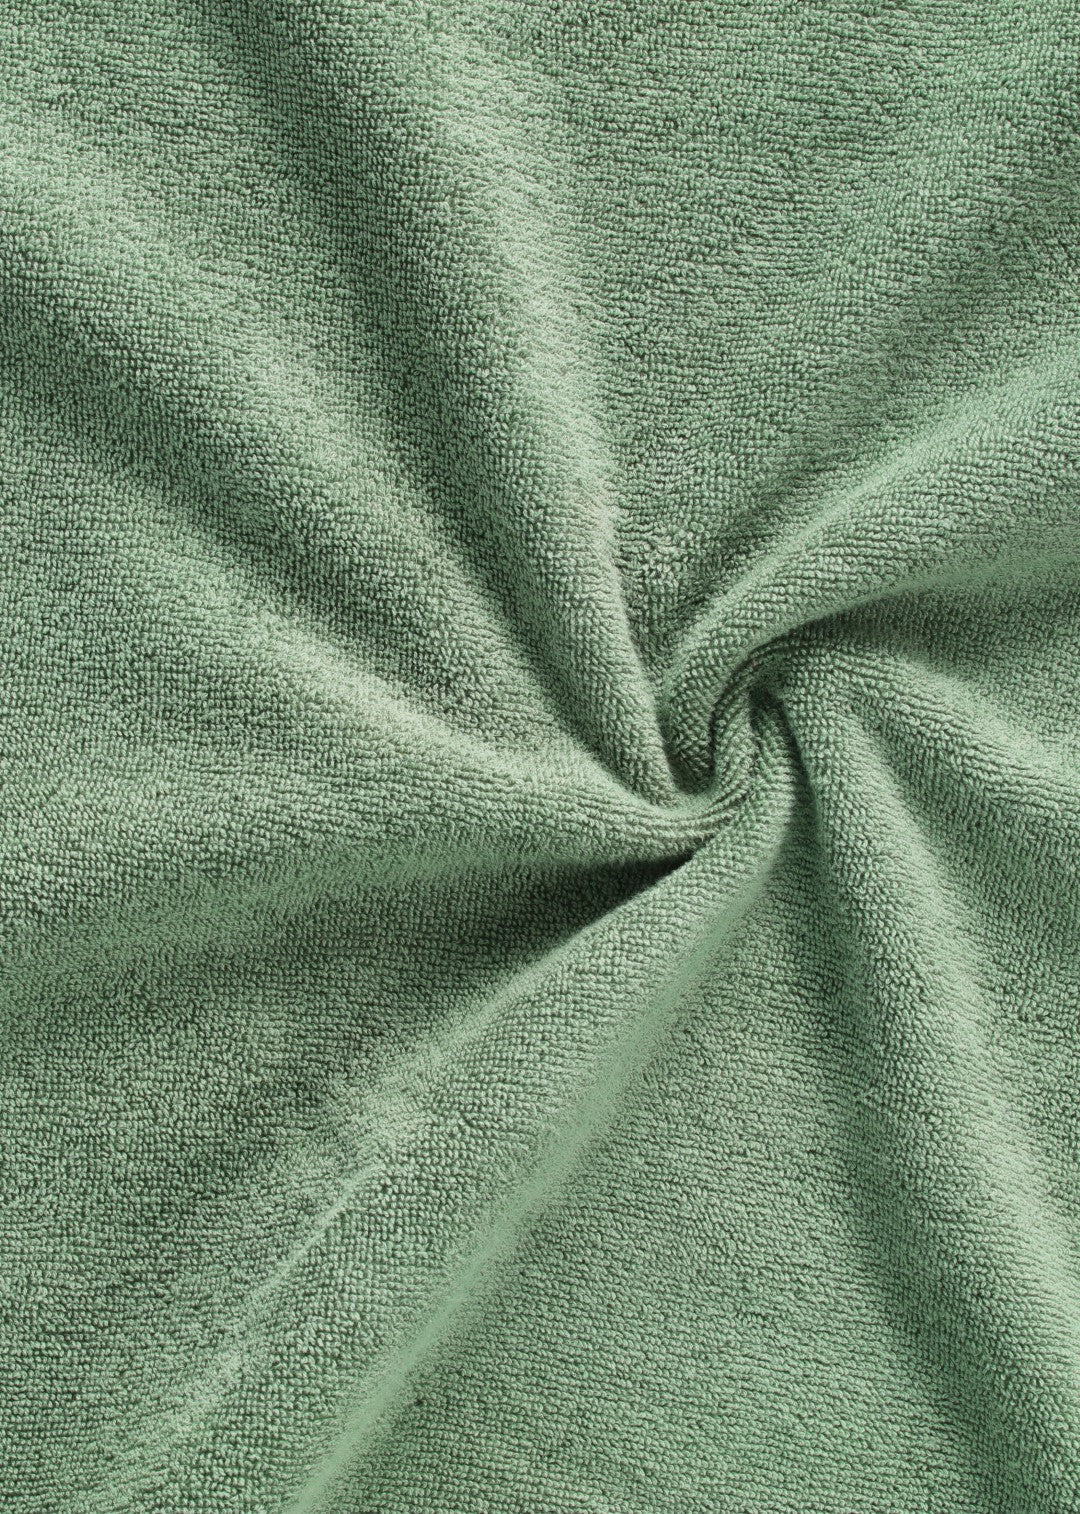 Frotte håndklæde - Mørkegrøn